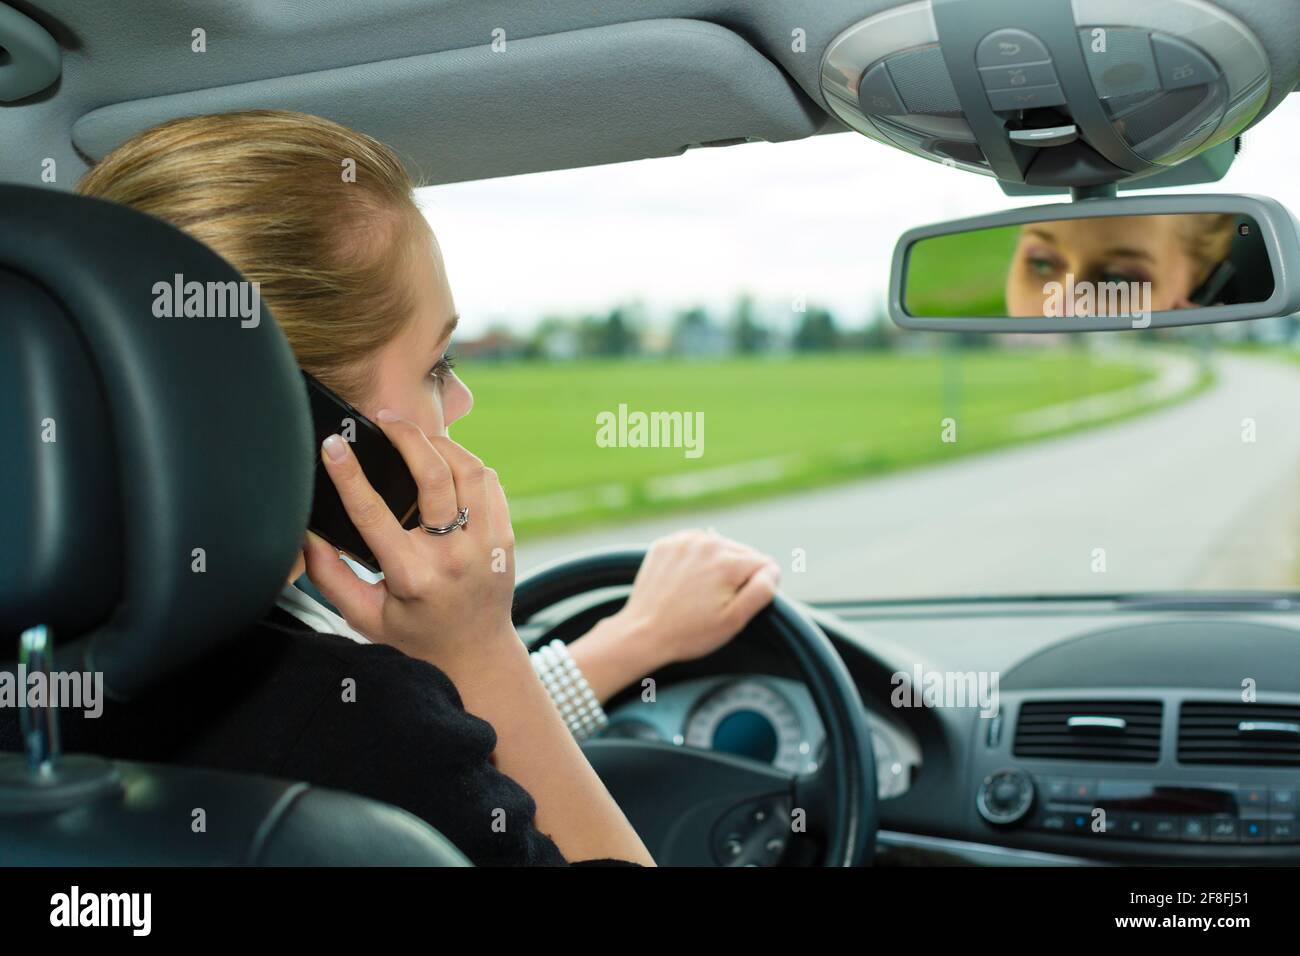 Разговаривать по телефону за рулем. Женщина за рулем с телефоном. Девушка в машине с телефоном. Человек в машине с телефоном. Человек говорит по телефону в машине.